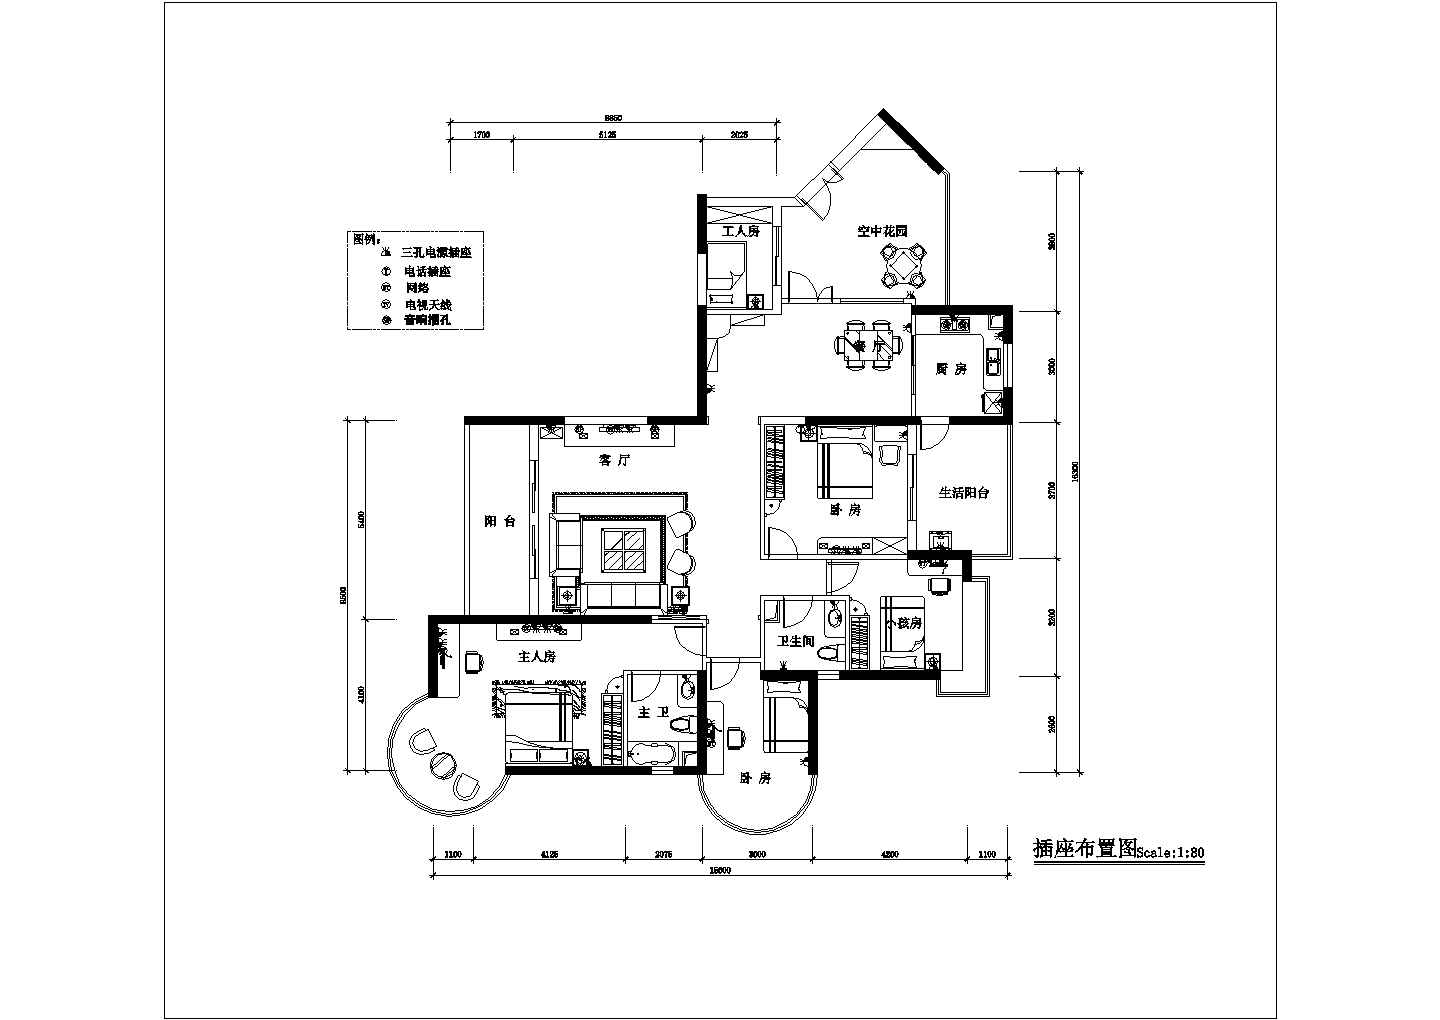 某地区四室两厅住宅装饰设计CAD平面布置参考图